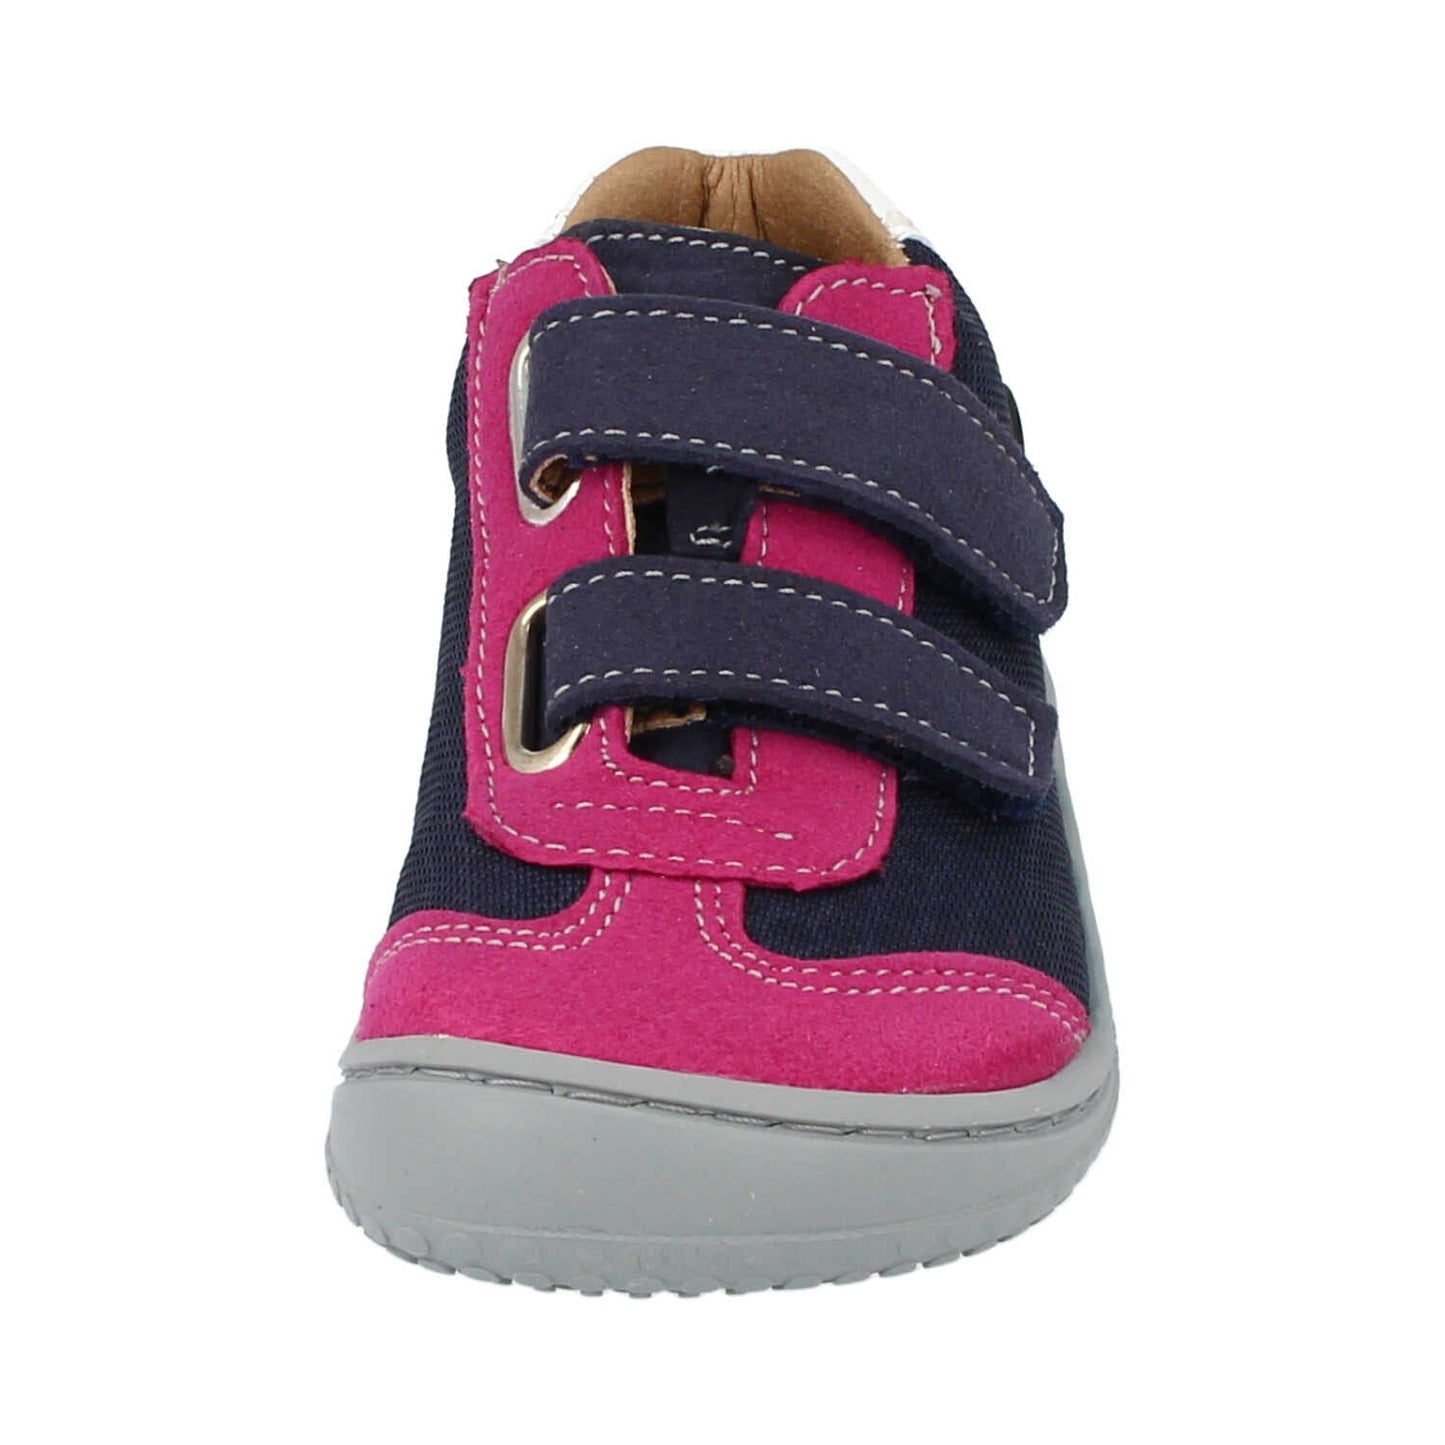 Filii Leguan "Medium" barfods sneakers til børn i farven ocean pink, forfra